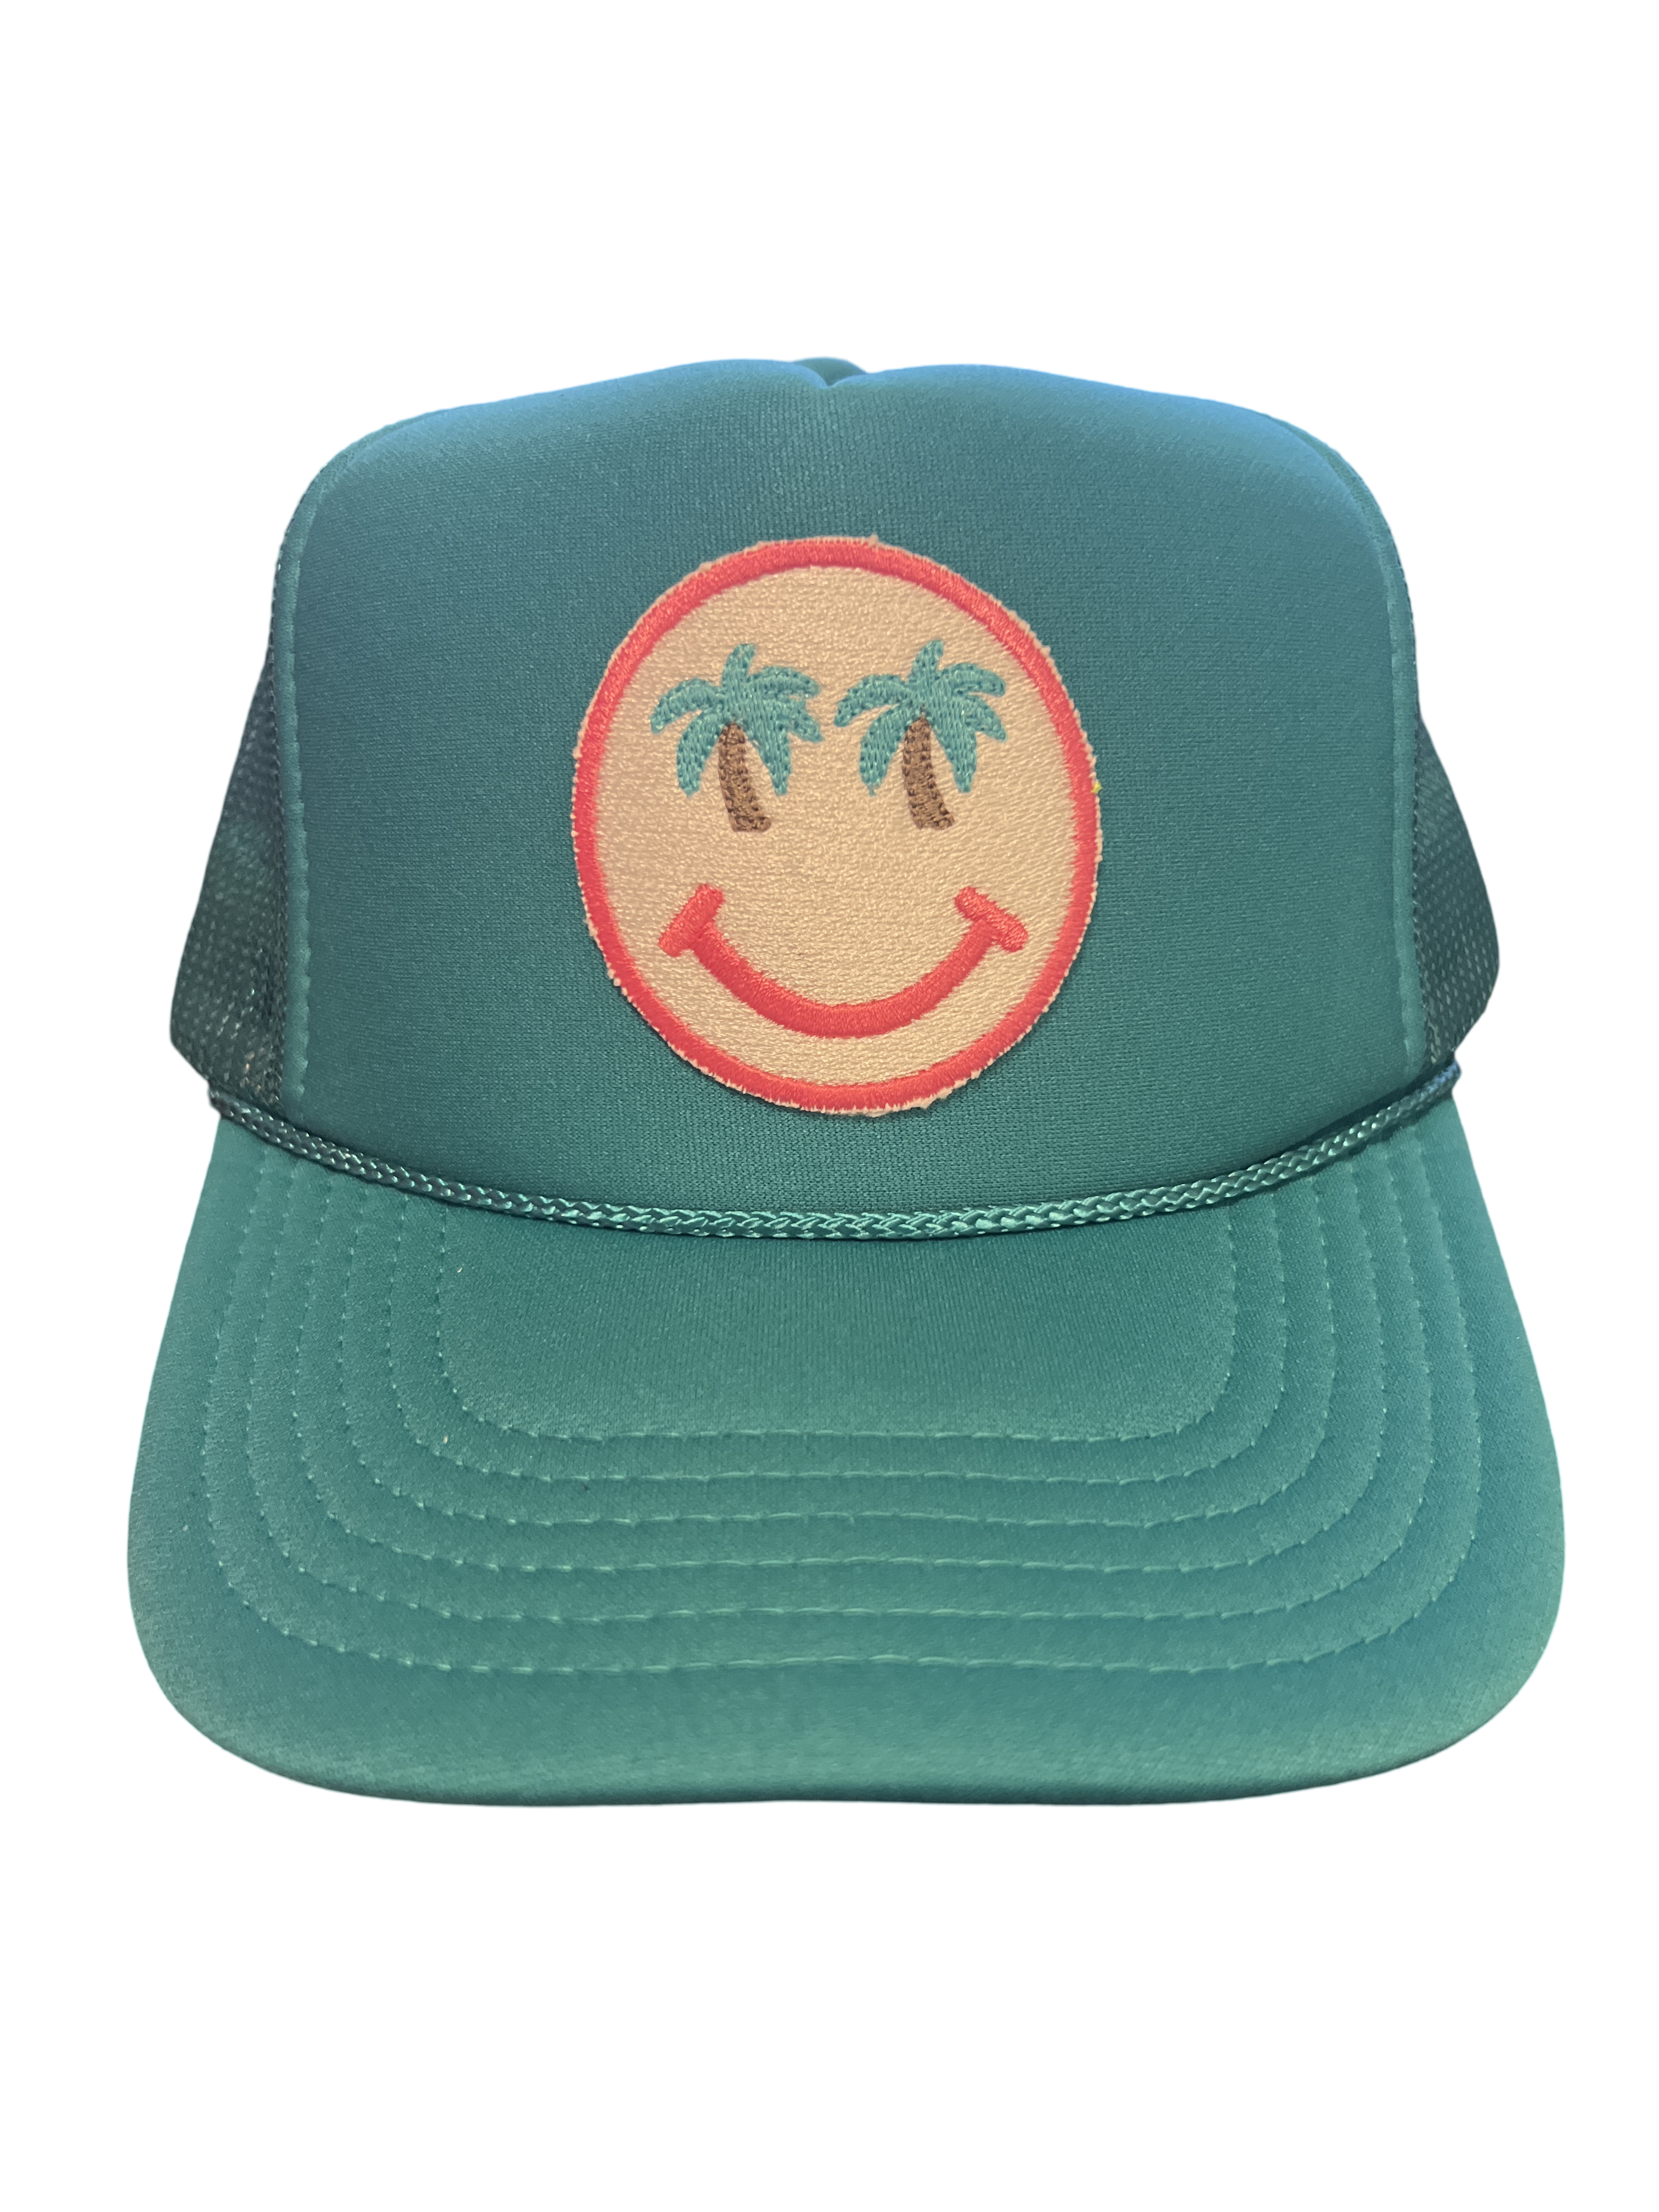 Trucker Hat Foam Smiley Face Palm Trees